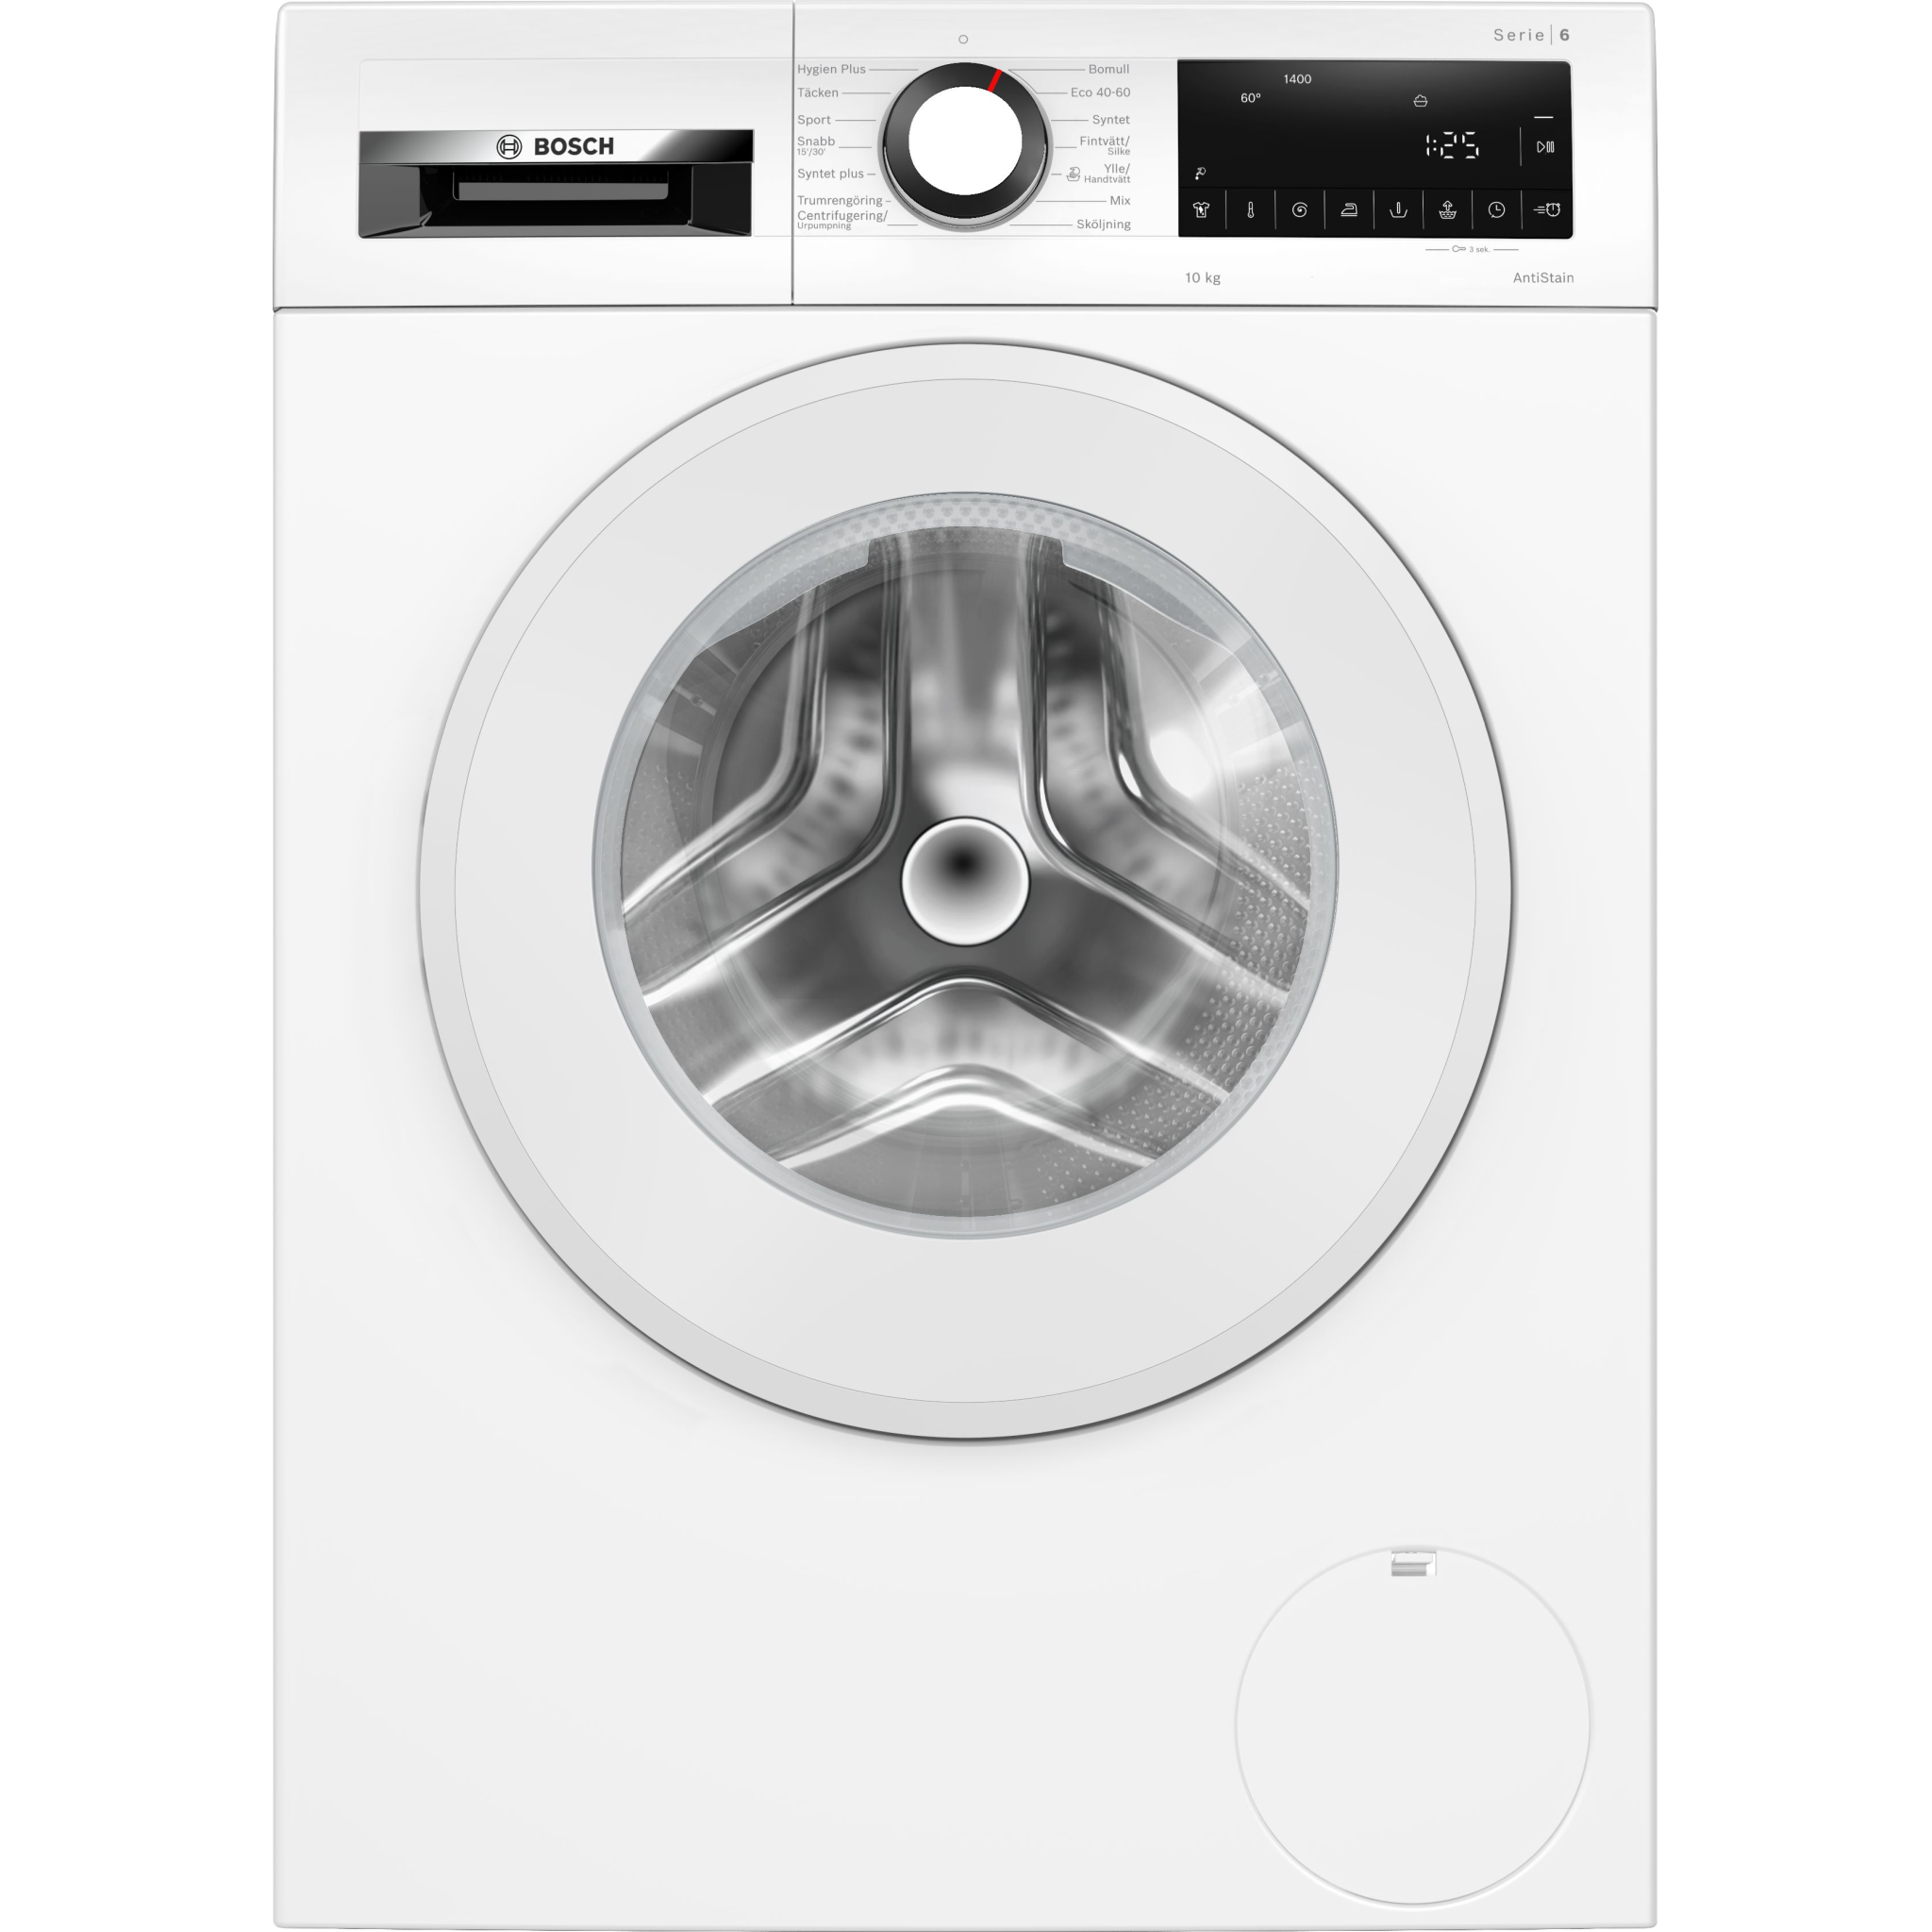 4242005352630 Bosch WGG2540LSN - Frontbetjent vaskemaskine Hvidevarer,Vaskemaskine,Frontbetjente vaskemaskiner 1400012650 WGG2540LSN